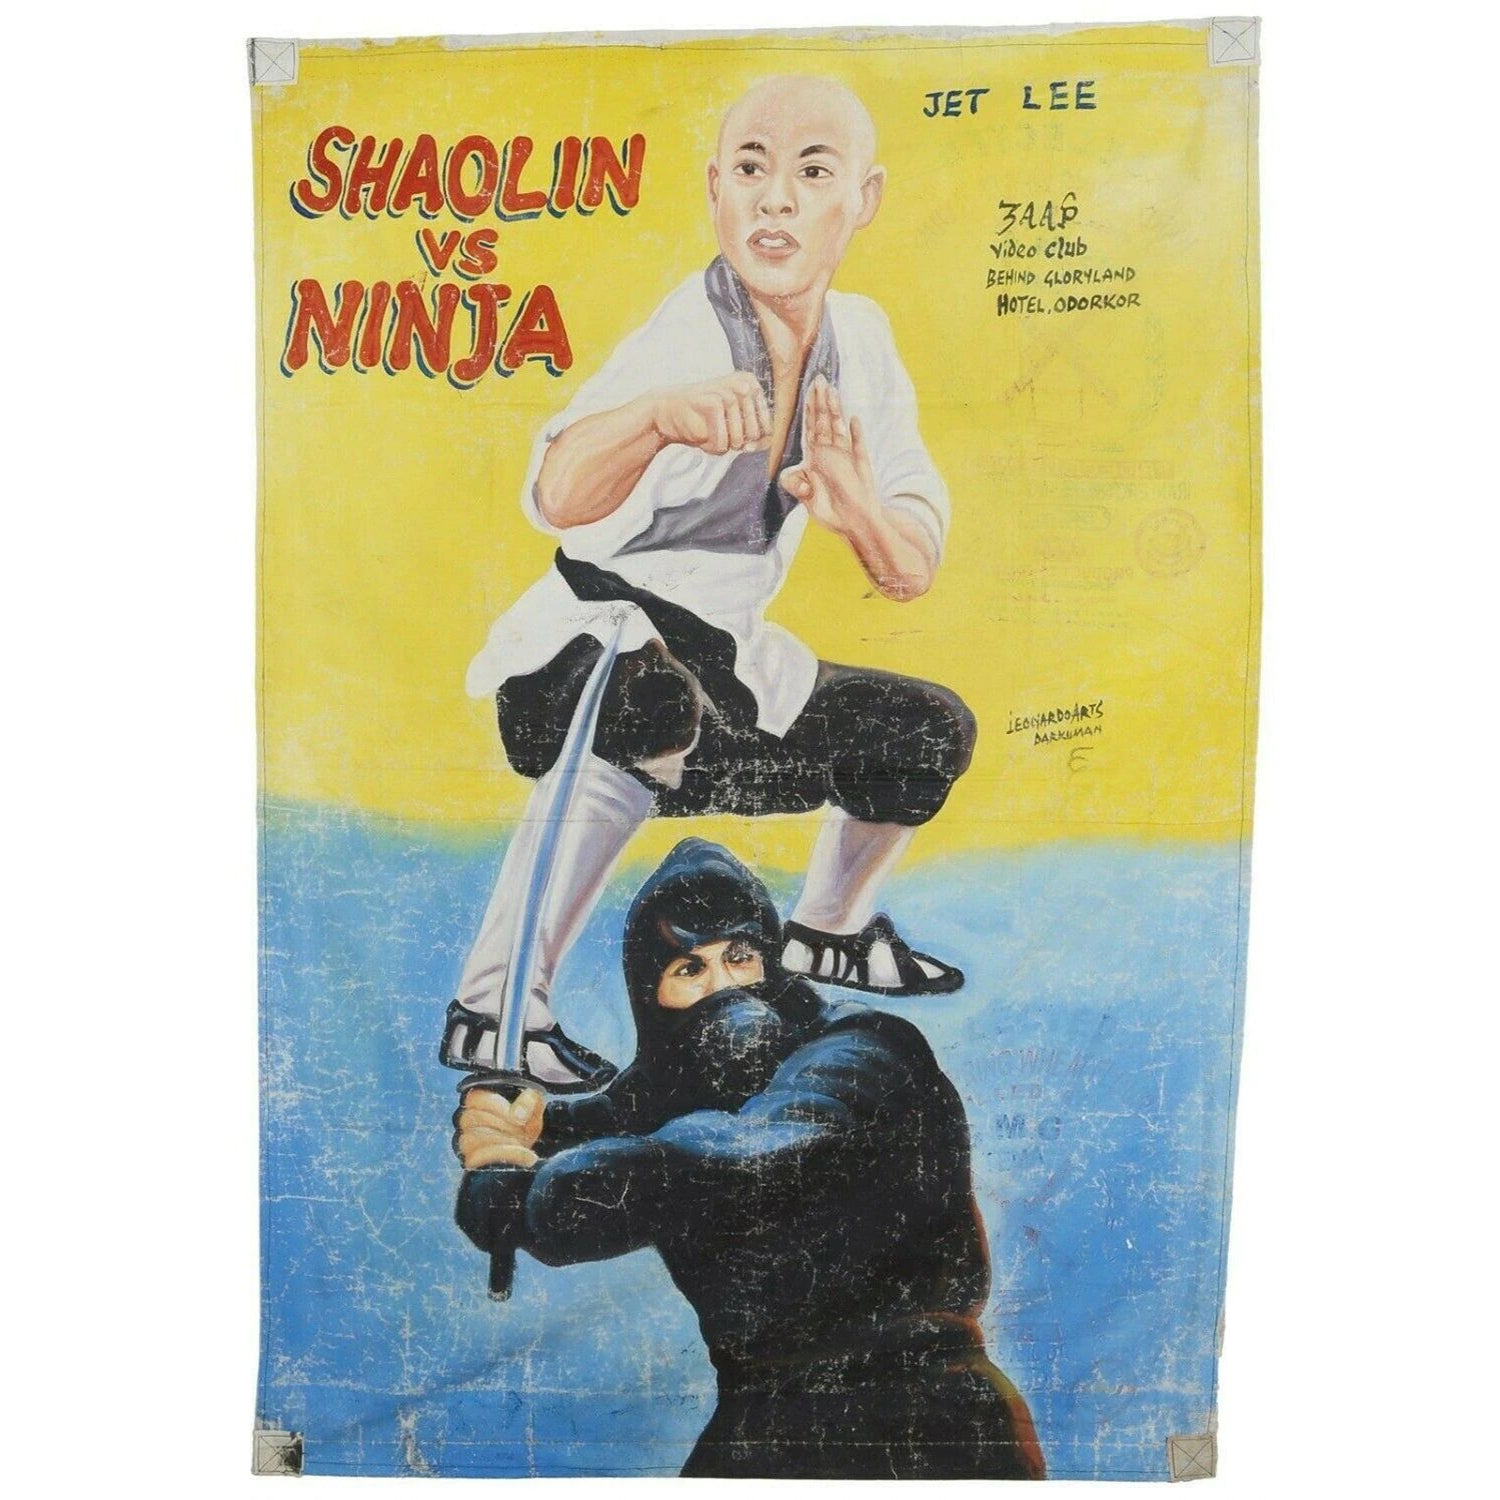 Αφίσα ταινίας της Γκάνας Αφρικανικός κινηματογράφος σακί αλευριού ζωγραφισμένος με λάδι SHAOLIN NINJA - Tribalgh